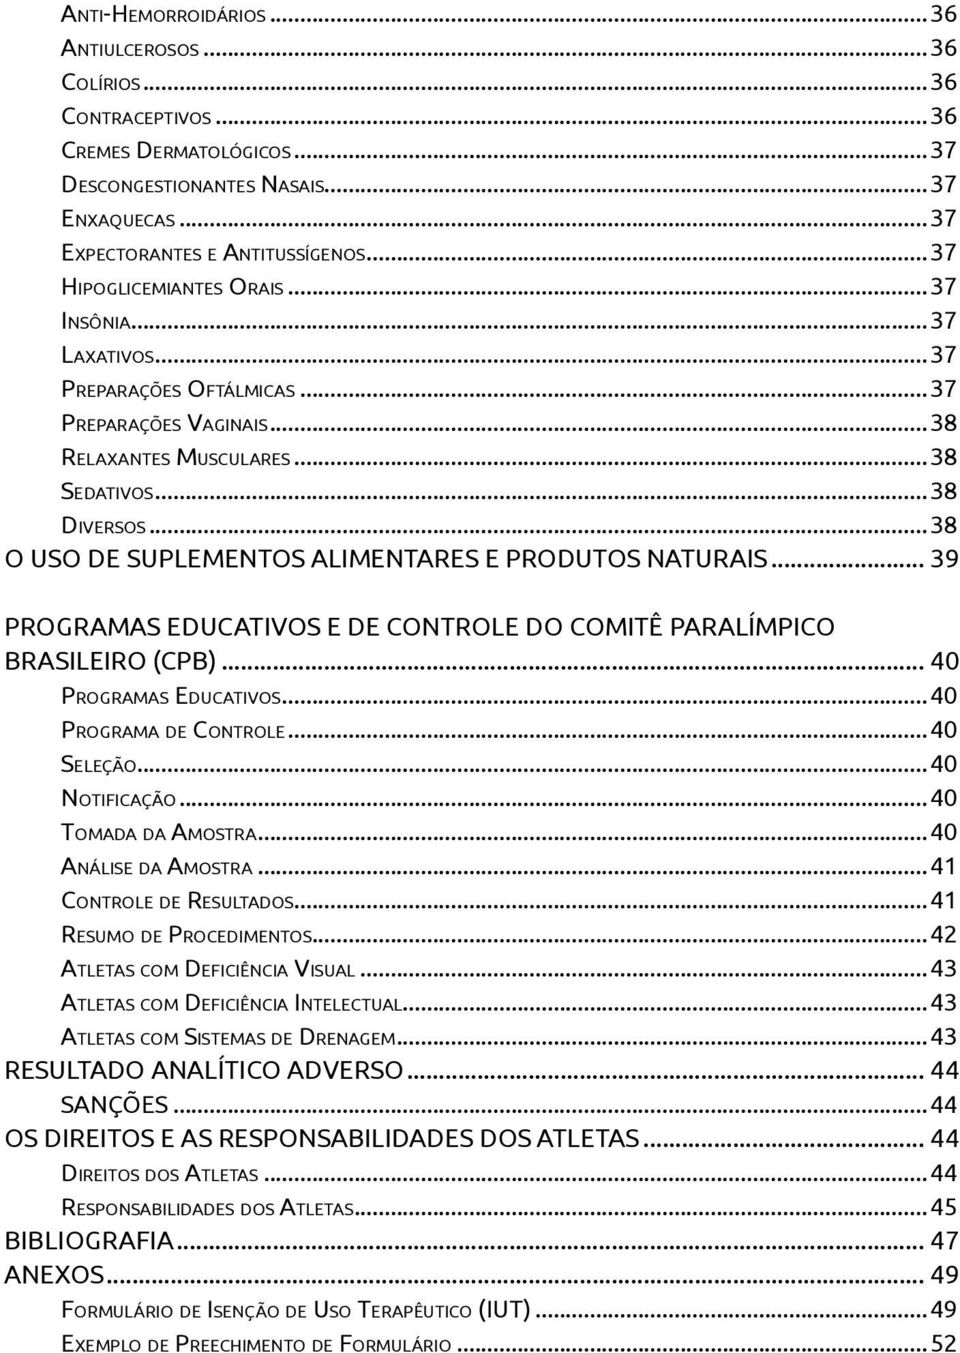 ..38 O USO DE SUPLEMENTOS ALIMENTARES E PRODUTOS NATURAIS... 39 PROGRAMAS EDUCATIVOS E DE CONTROLE DO COMITÊ PARALÍMPICO BRASILEIRO (CPB)... 40 PROGRAMAS EDUCATIVOS...40 PROGRAMA DE CONTROLE.